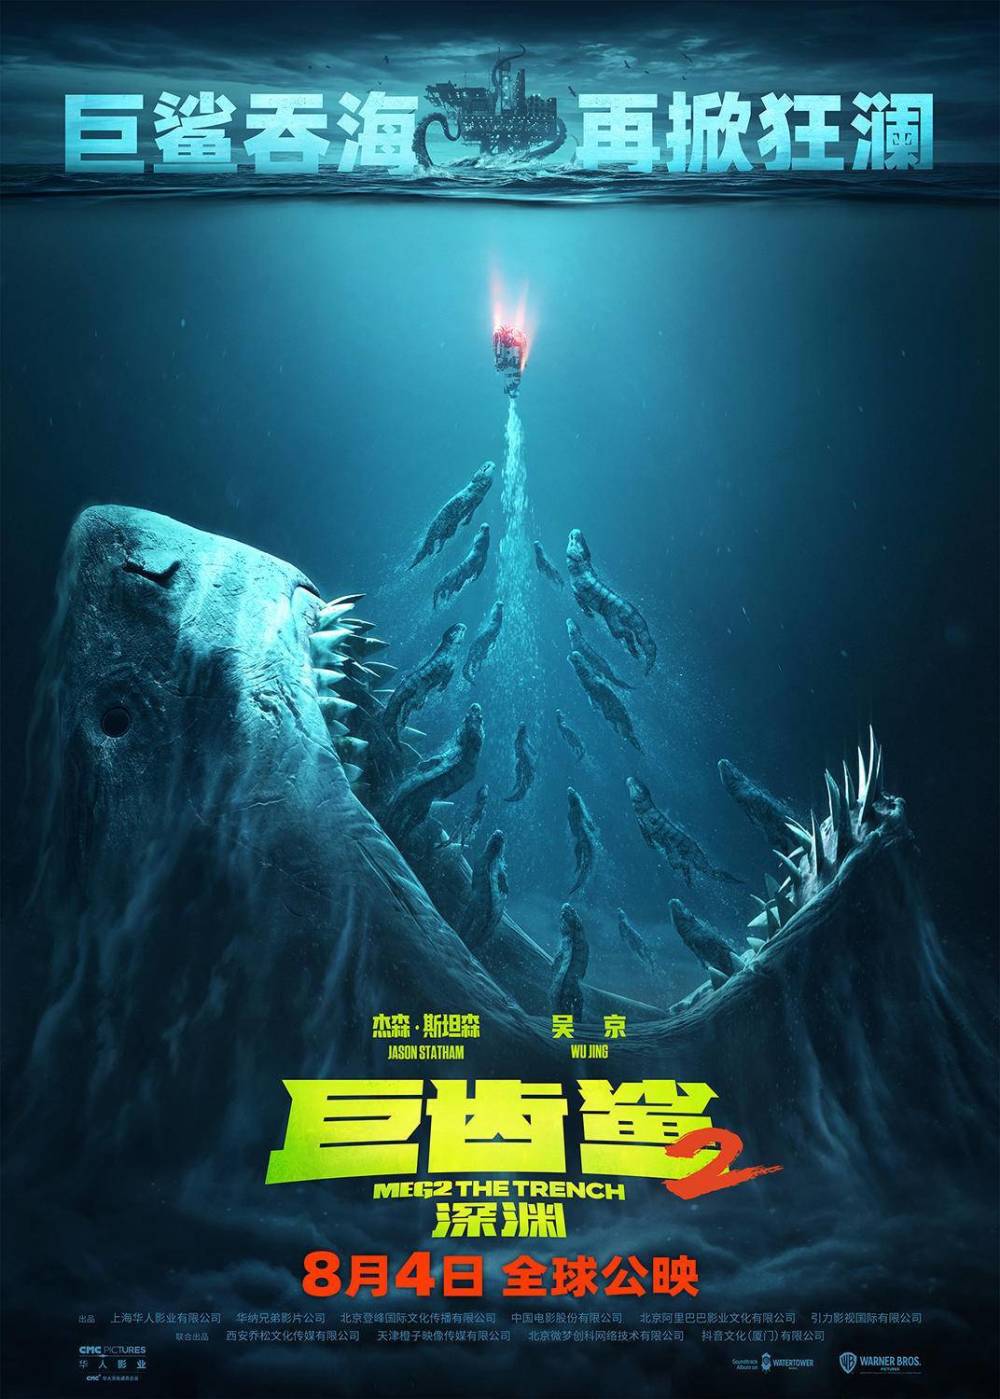 杰森·斯坦森,吴京主演的深海怪兽国际大片《巨齿鲨2:深渊》发布定档